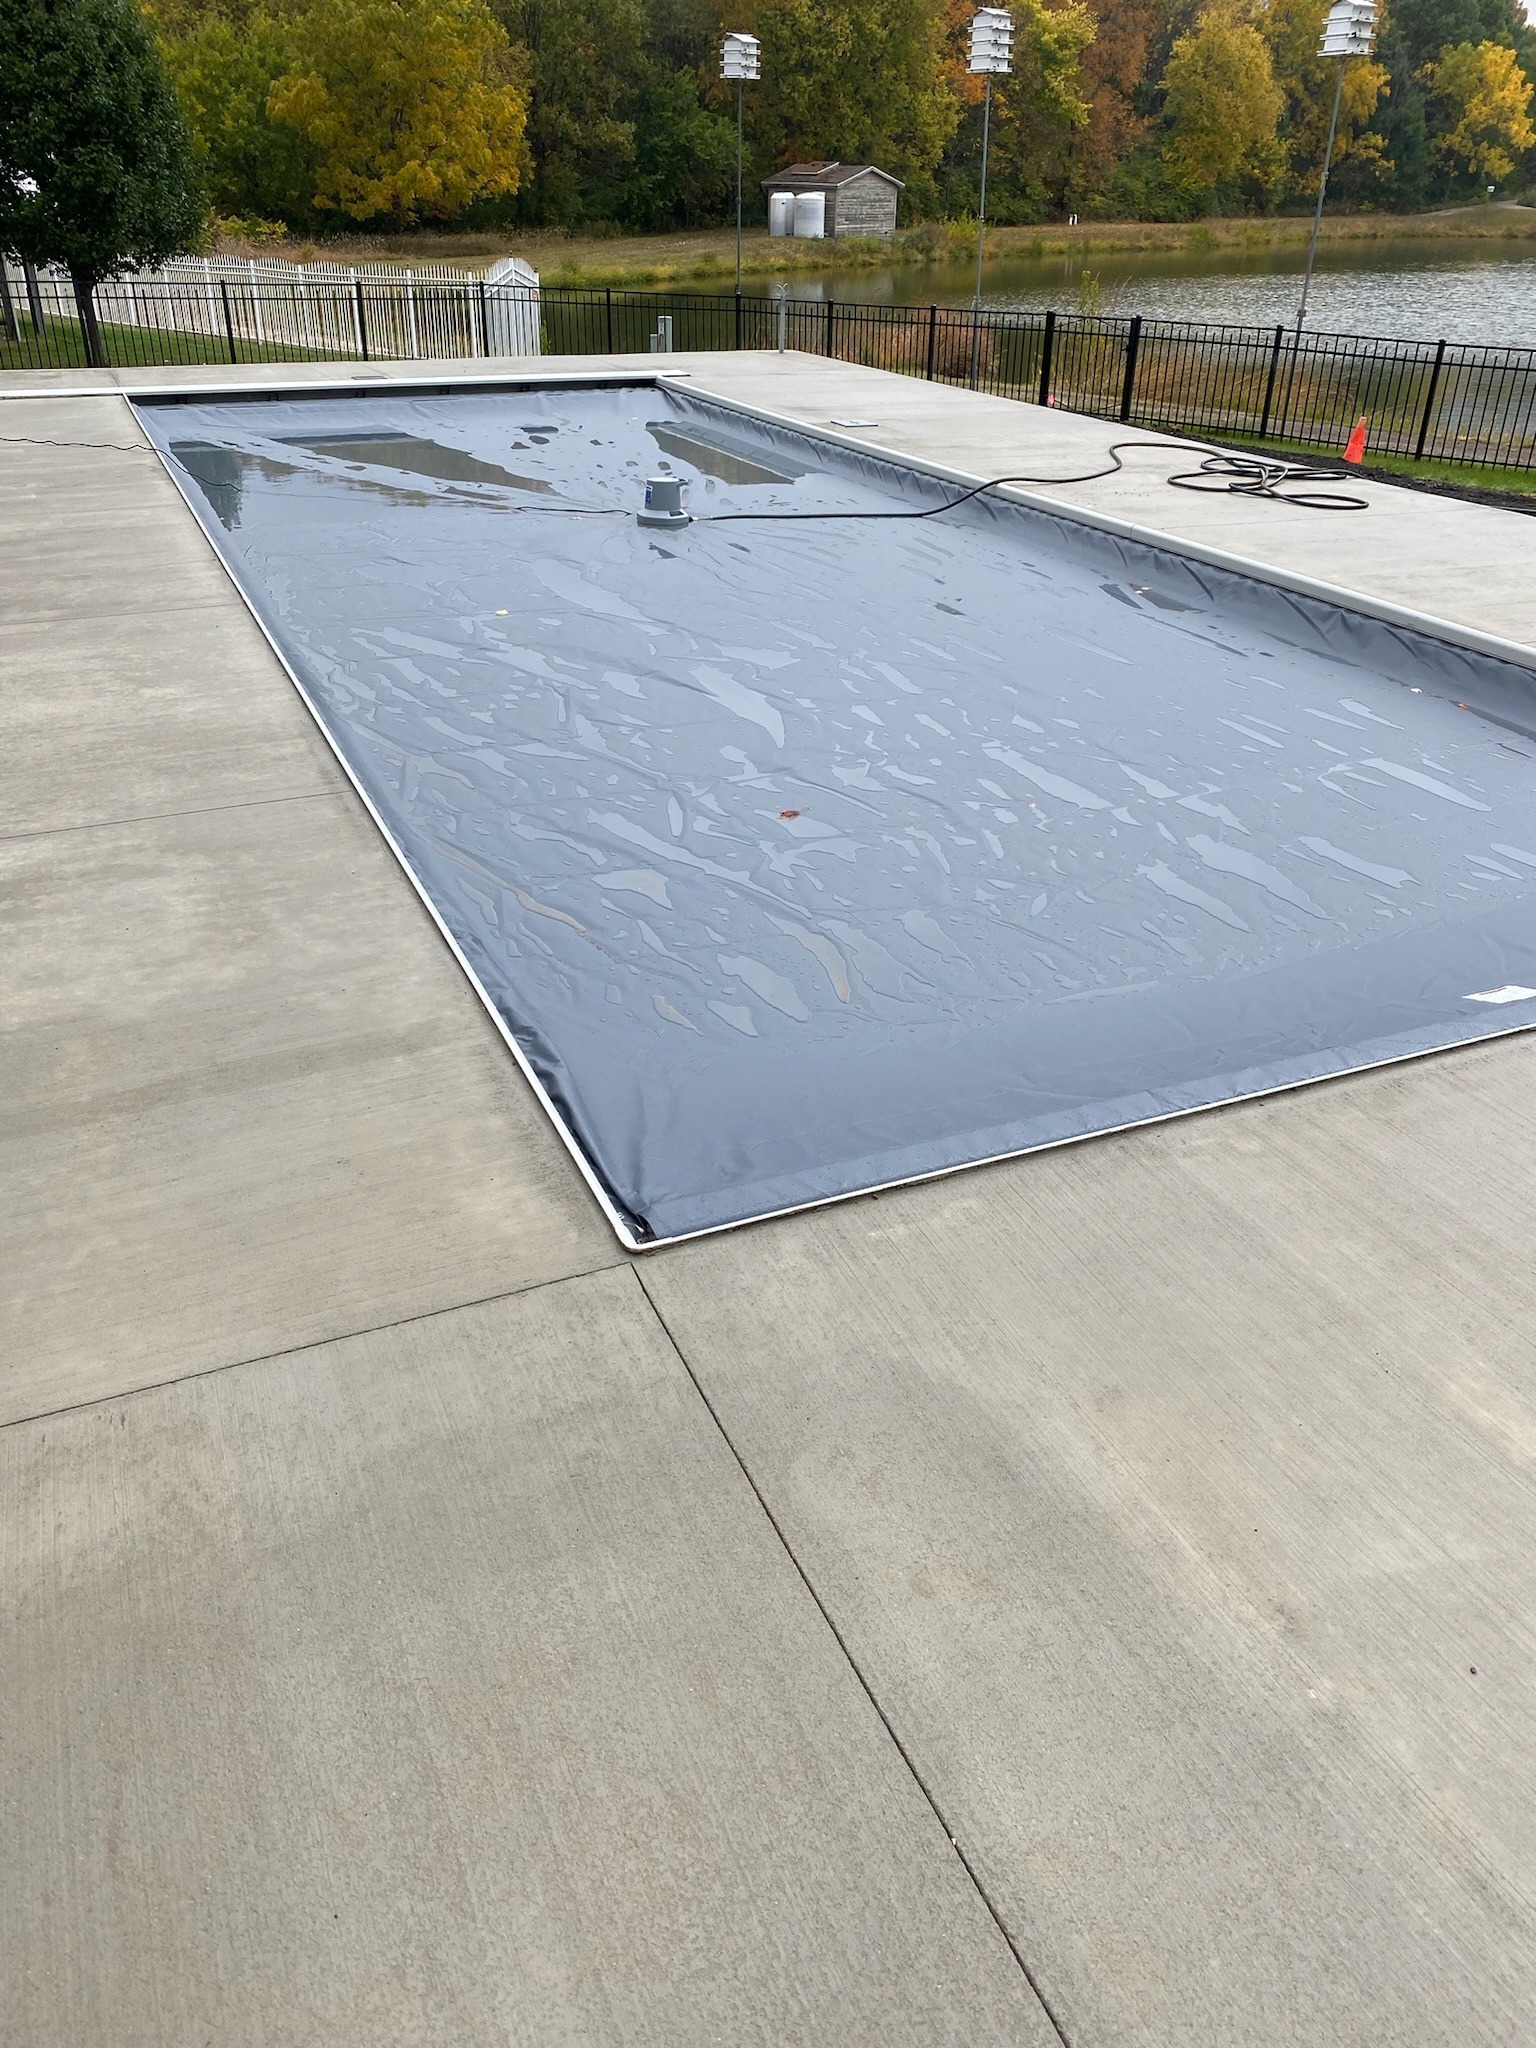 Pool Cover Repair on Inground Pool